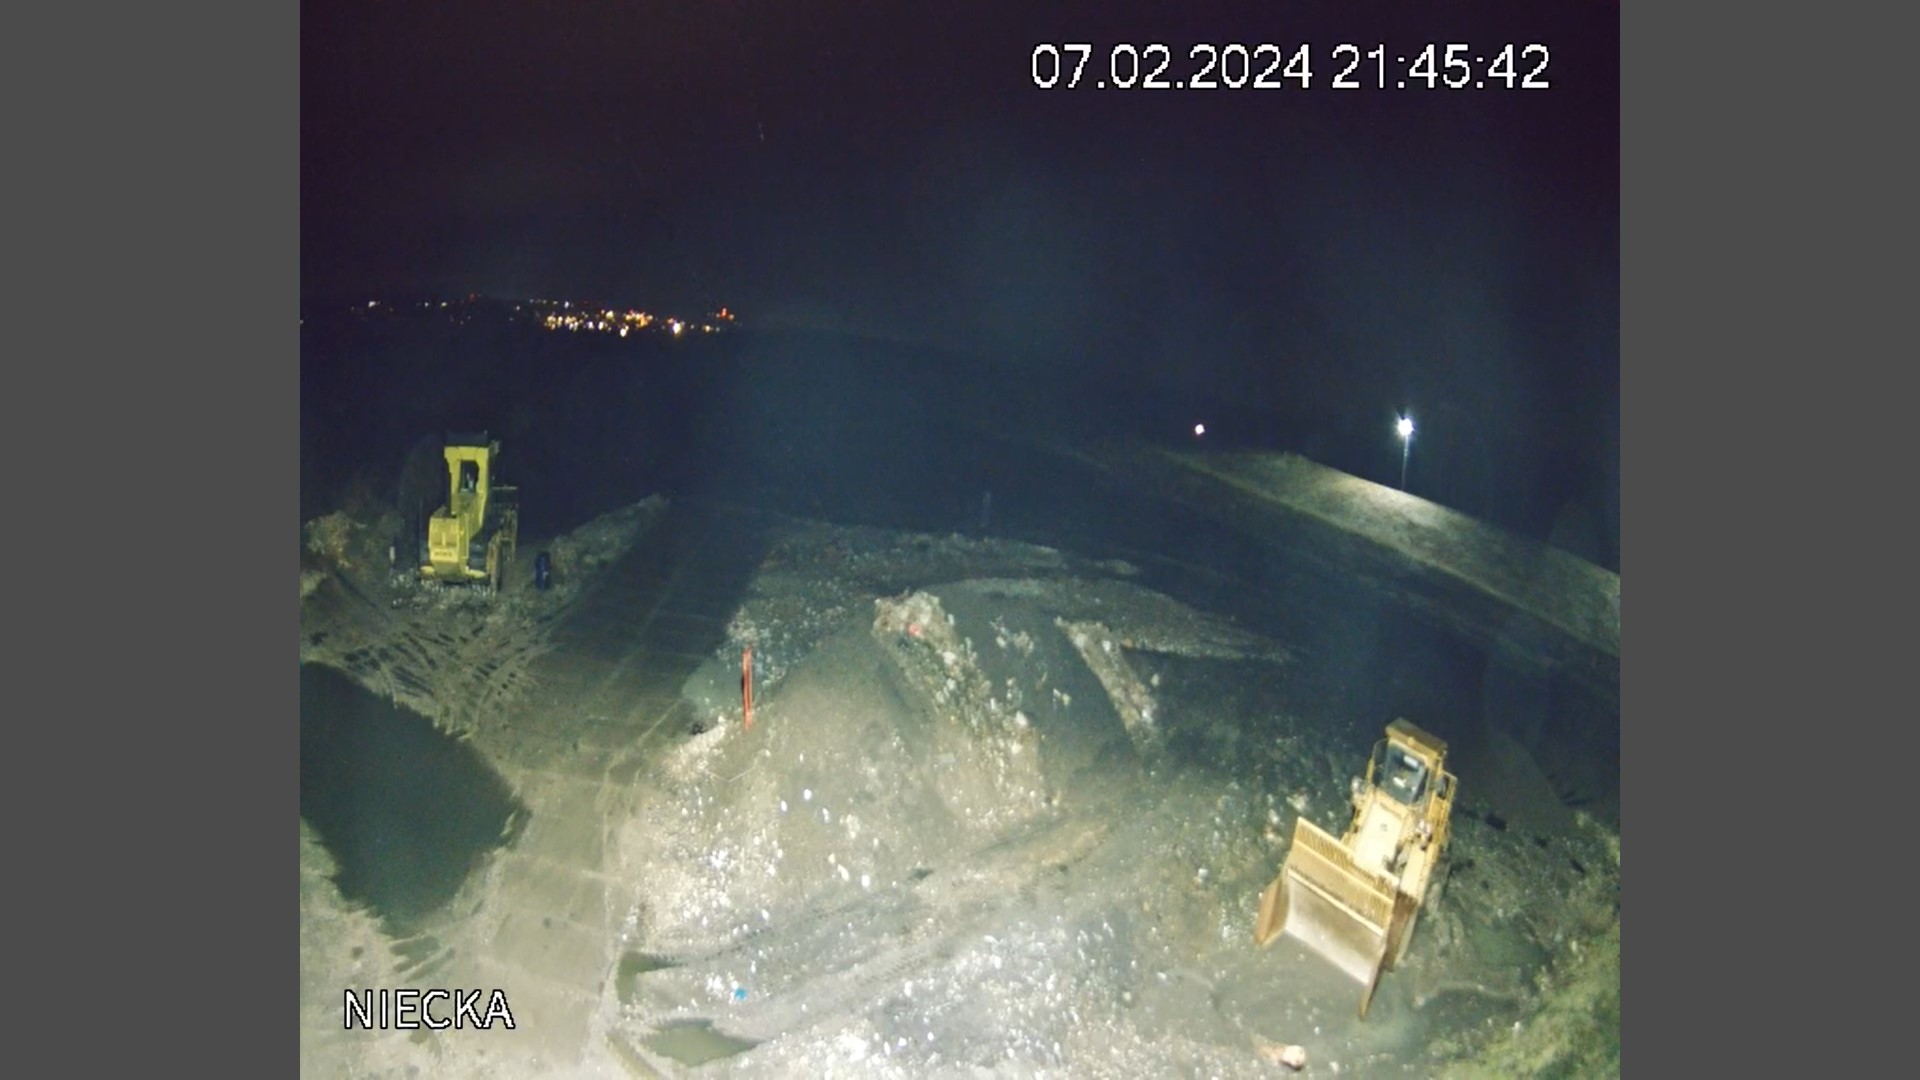 Składowisko odpadów w Raciborzu - widok nocą z kamery monitoringu. RCR udostępnia zapis wideo na żywo na swojej stronie internetowej